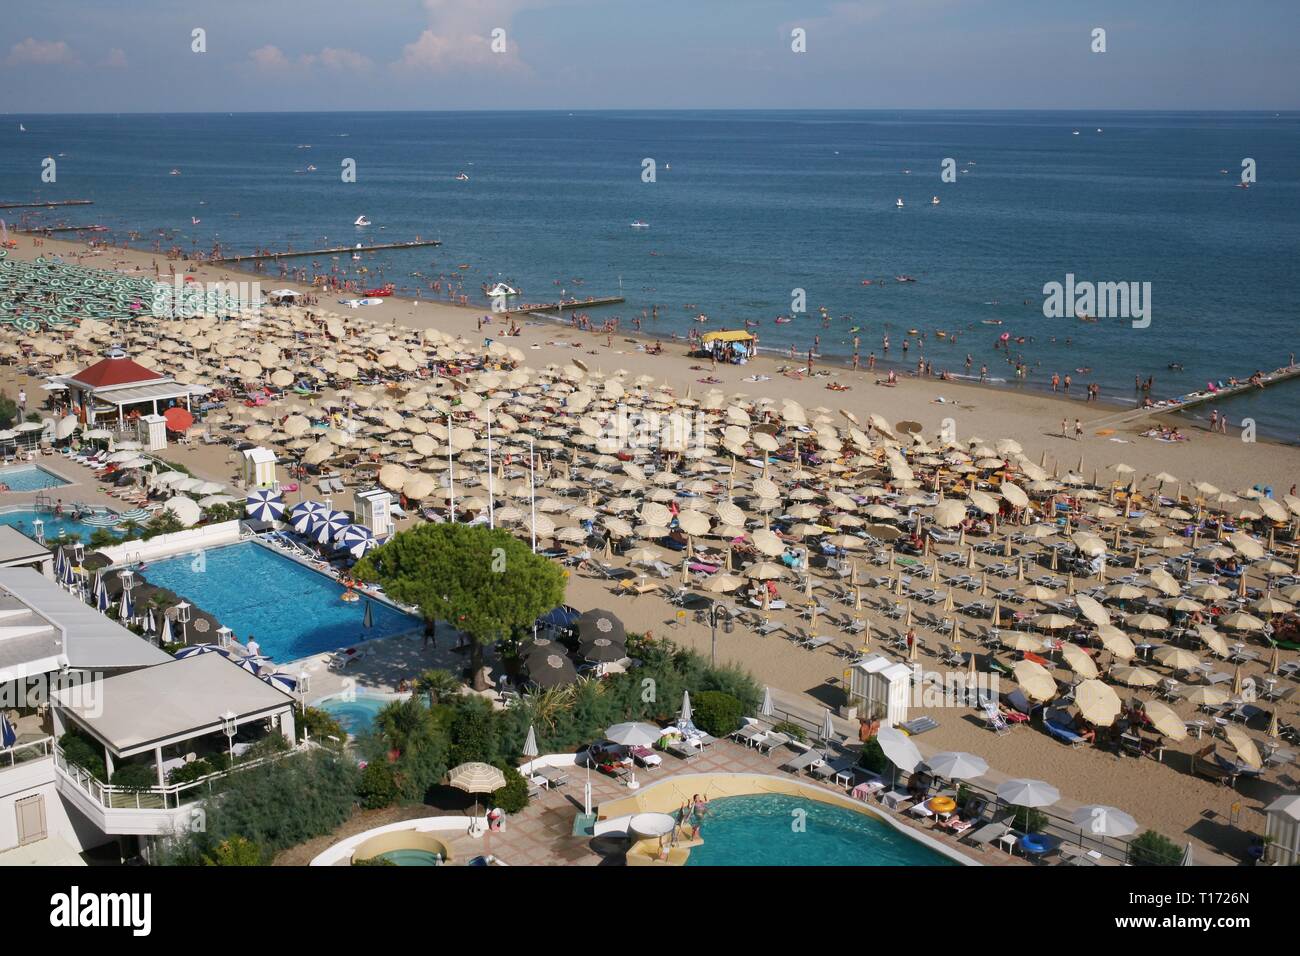 The Lido di Jesolo is the beach area of Jesolo in the province of Venice Italy. Stock Photo